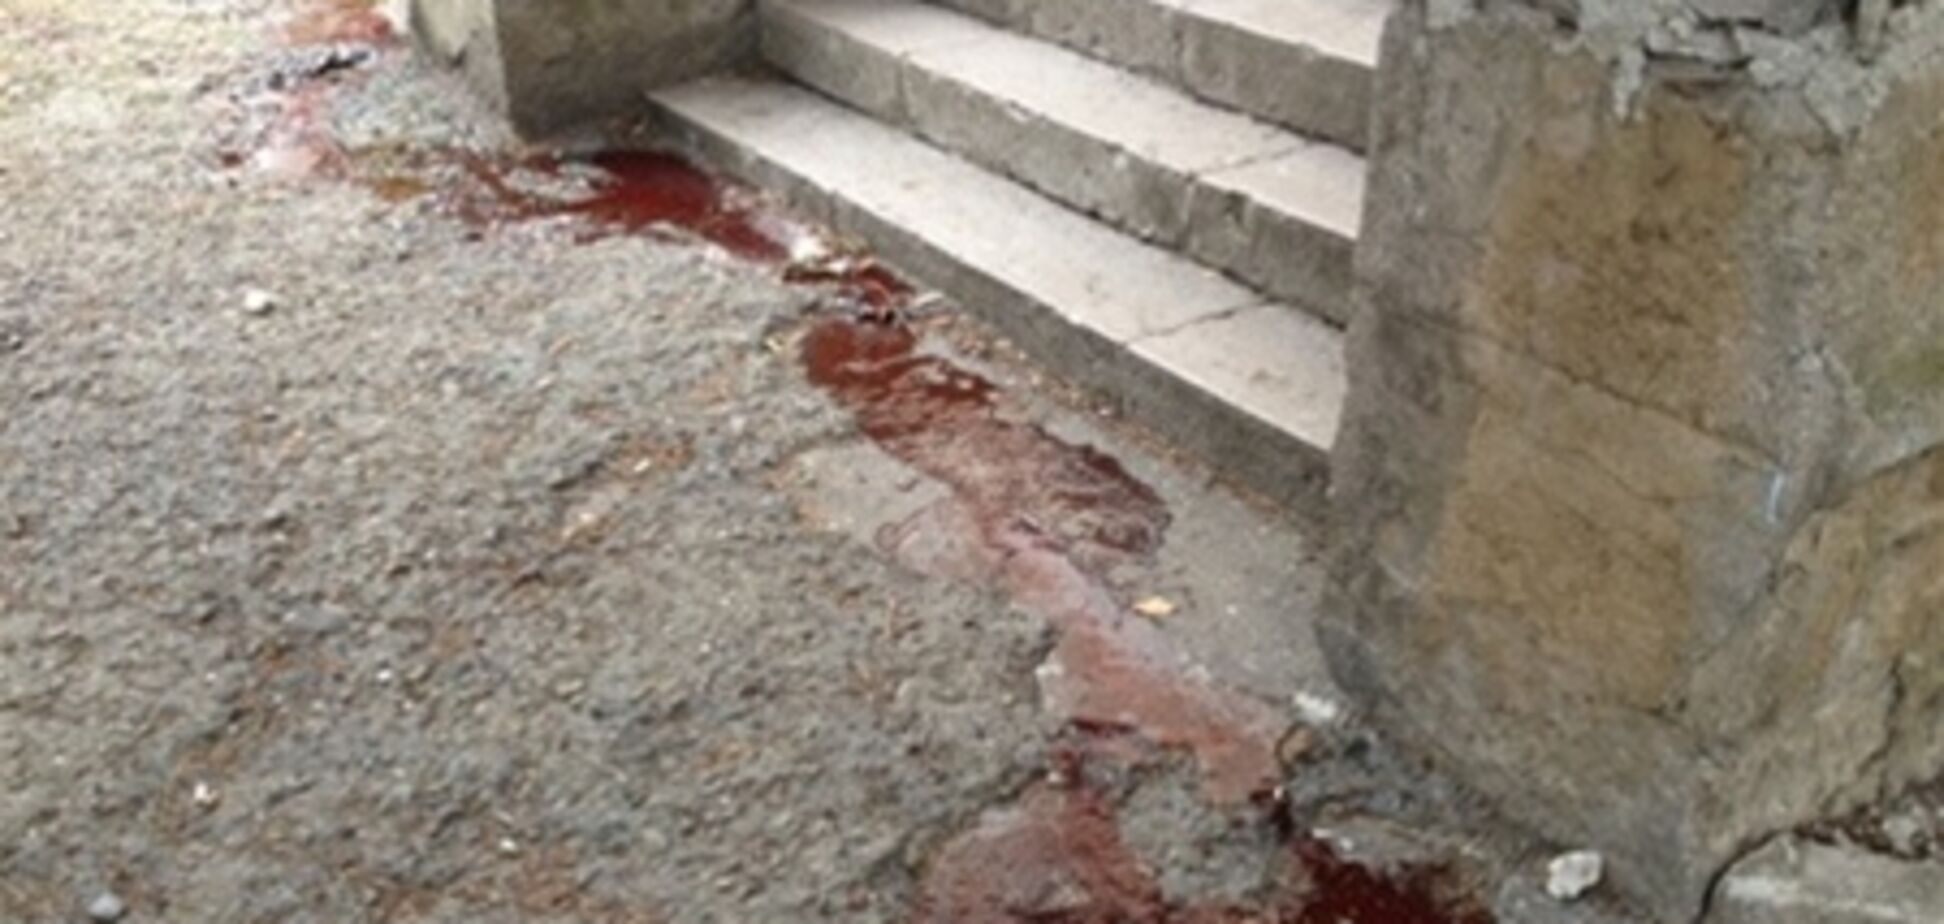 Трагедія в санаторії 'Юність': змивати кров змусили дітей